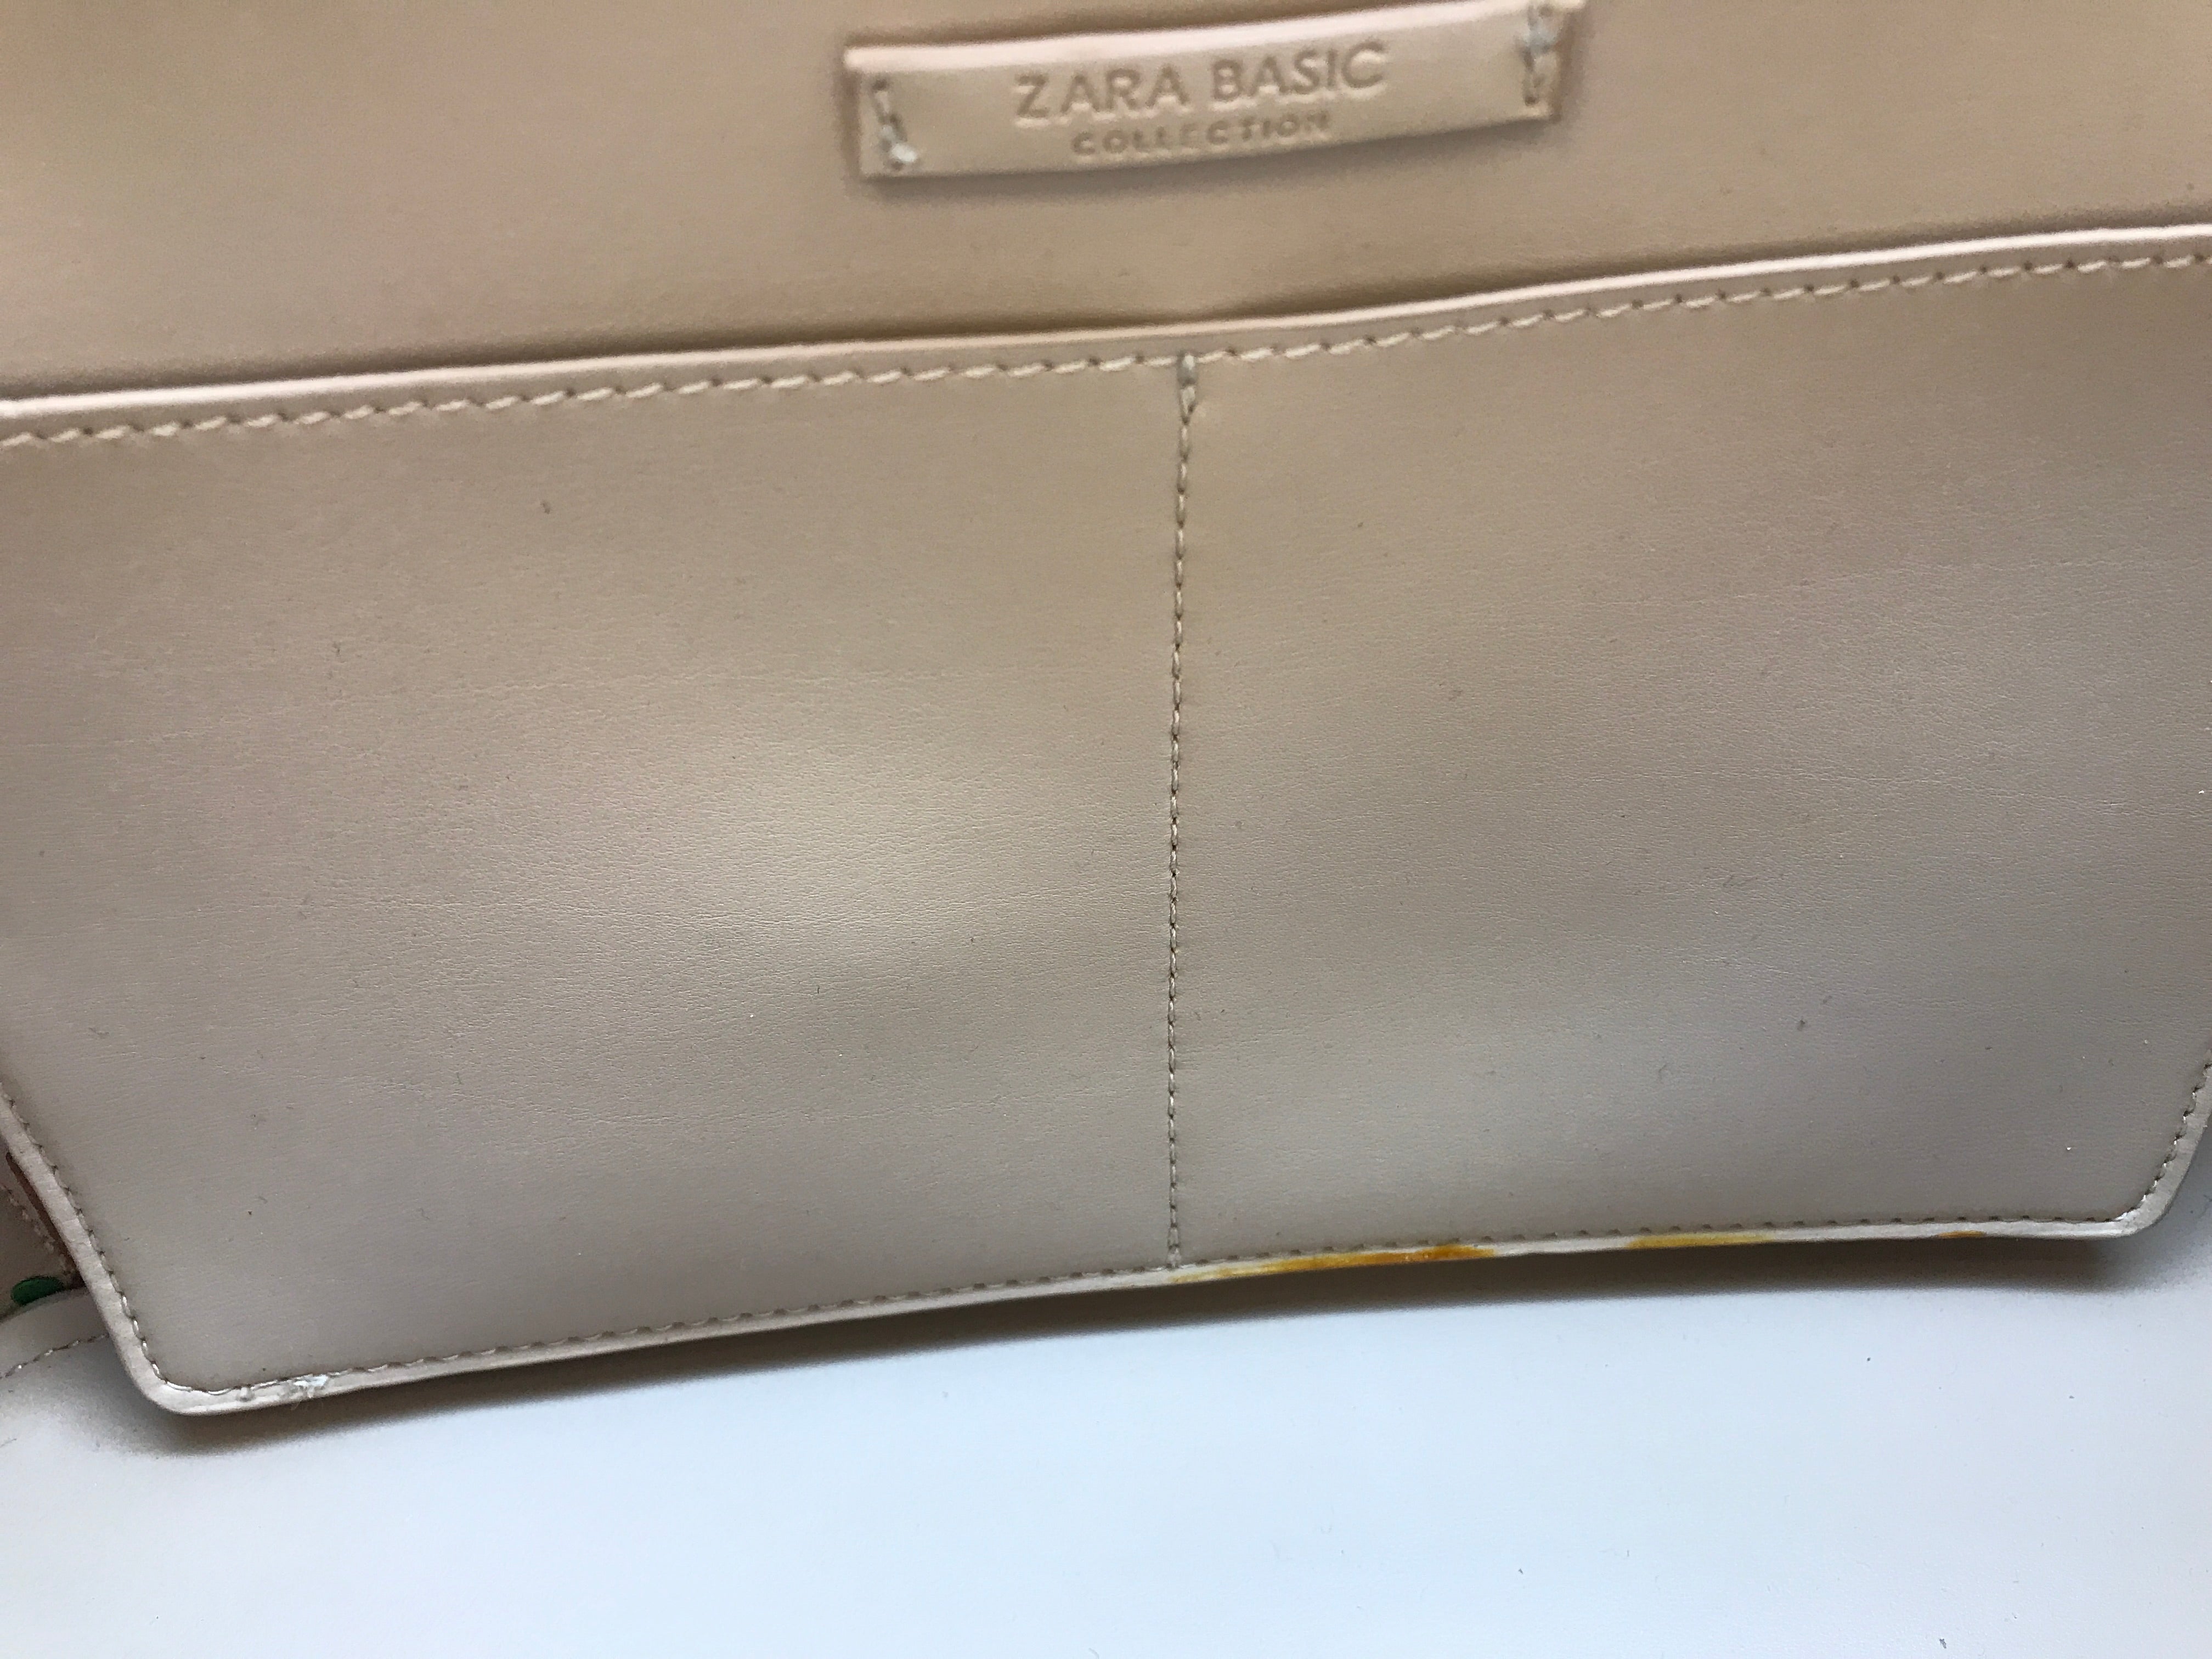 Zara Basic Collection Beige Vinyl 15" x 10.5" Work Bag Tote